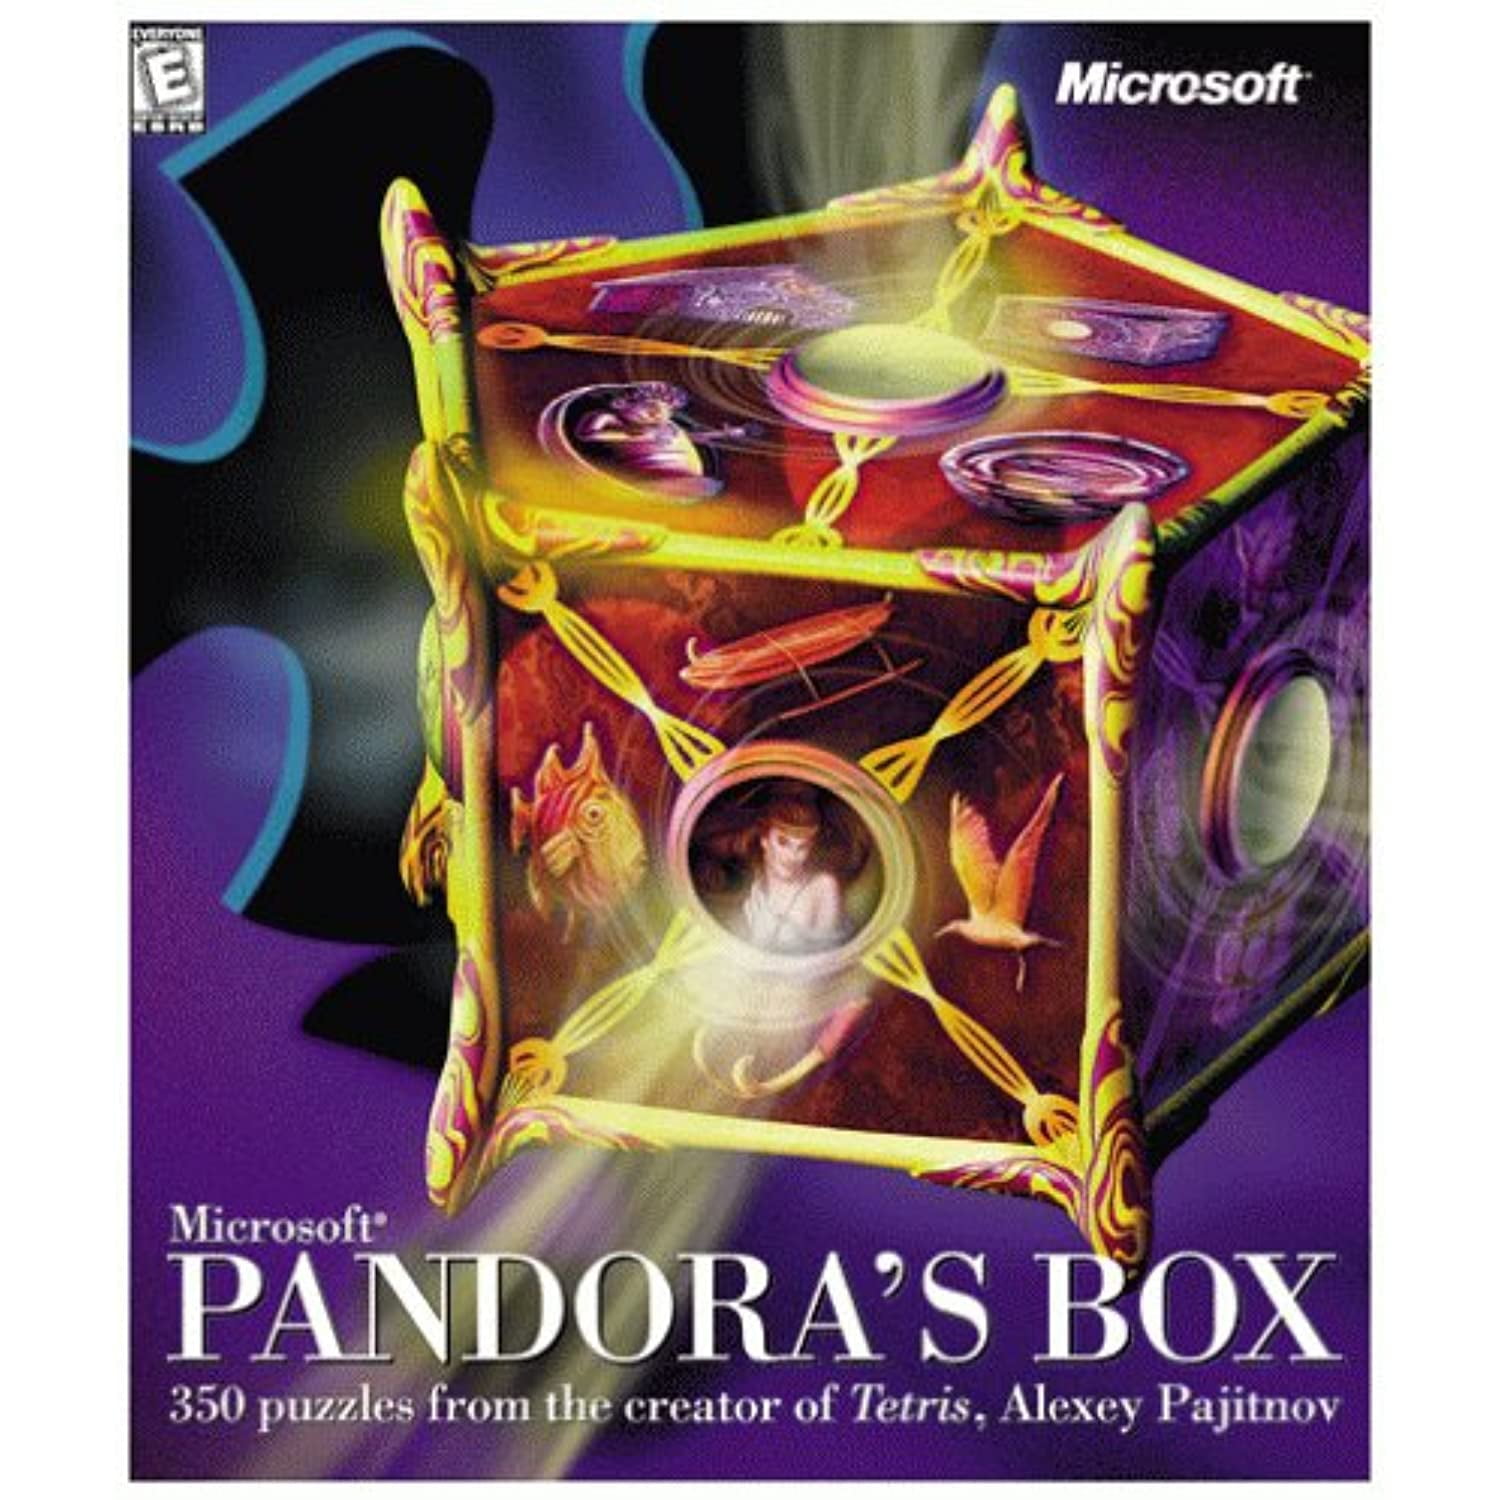 巫术：潘多拉魔盒 游戏截图截图_巫术：潘多拉魔盒 游戏截图壁纸_巫术：潘多拉魔盒 游戏截图图片_3DM单机